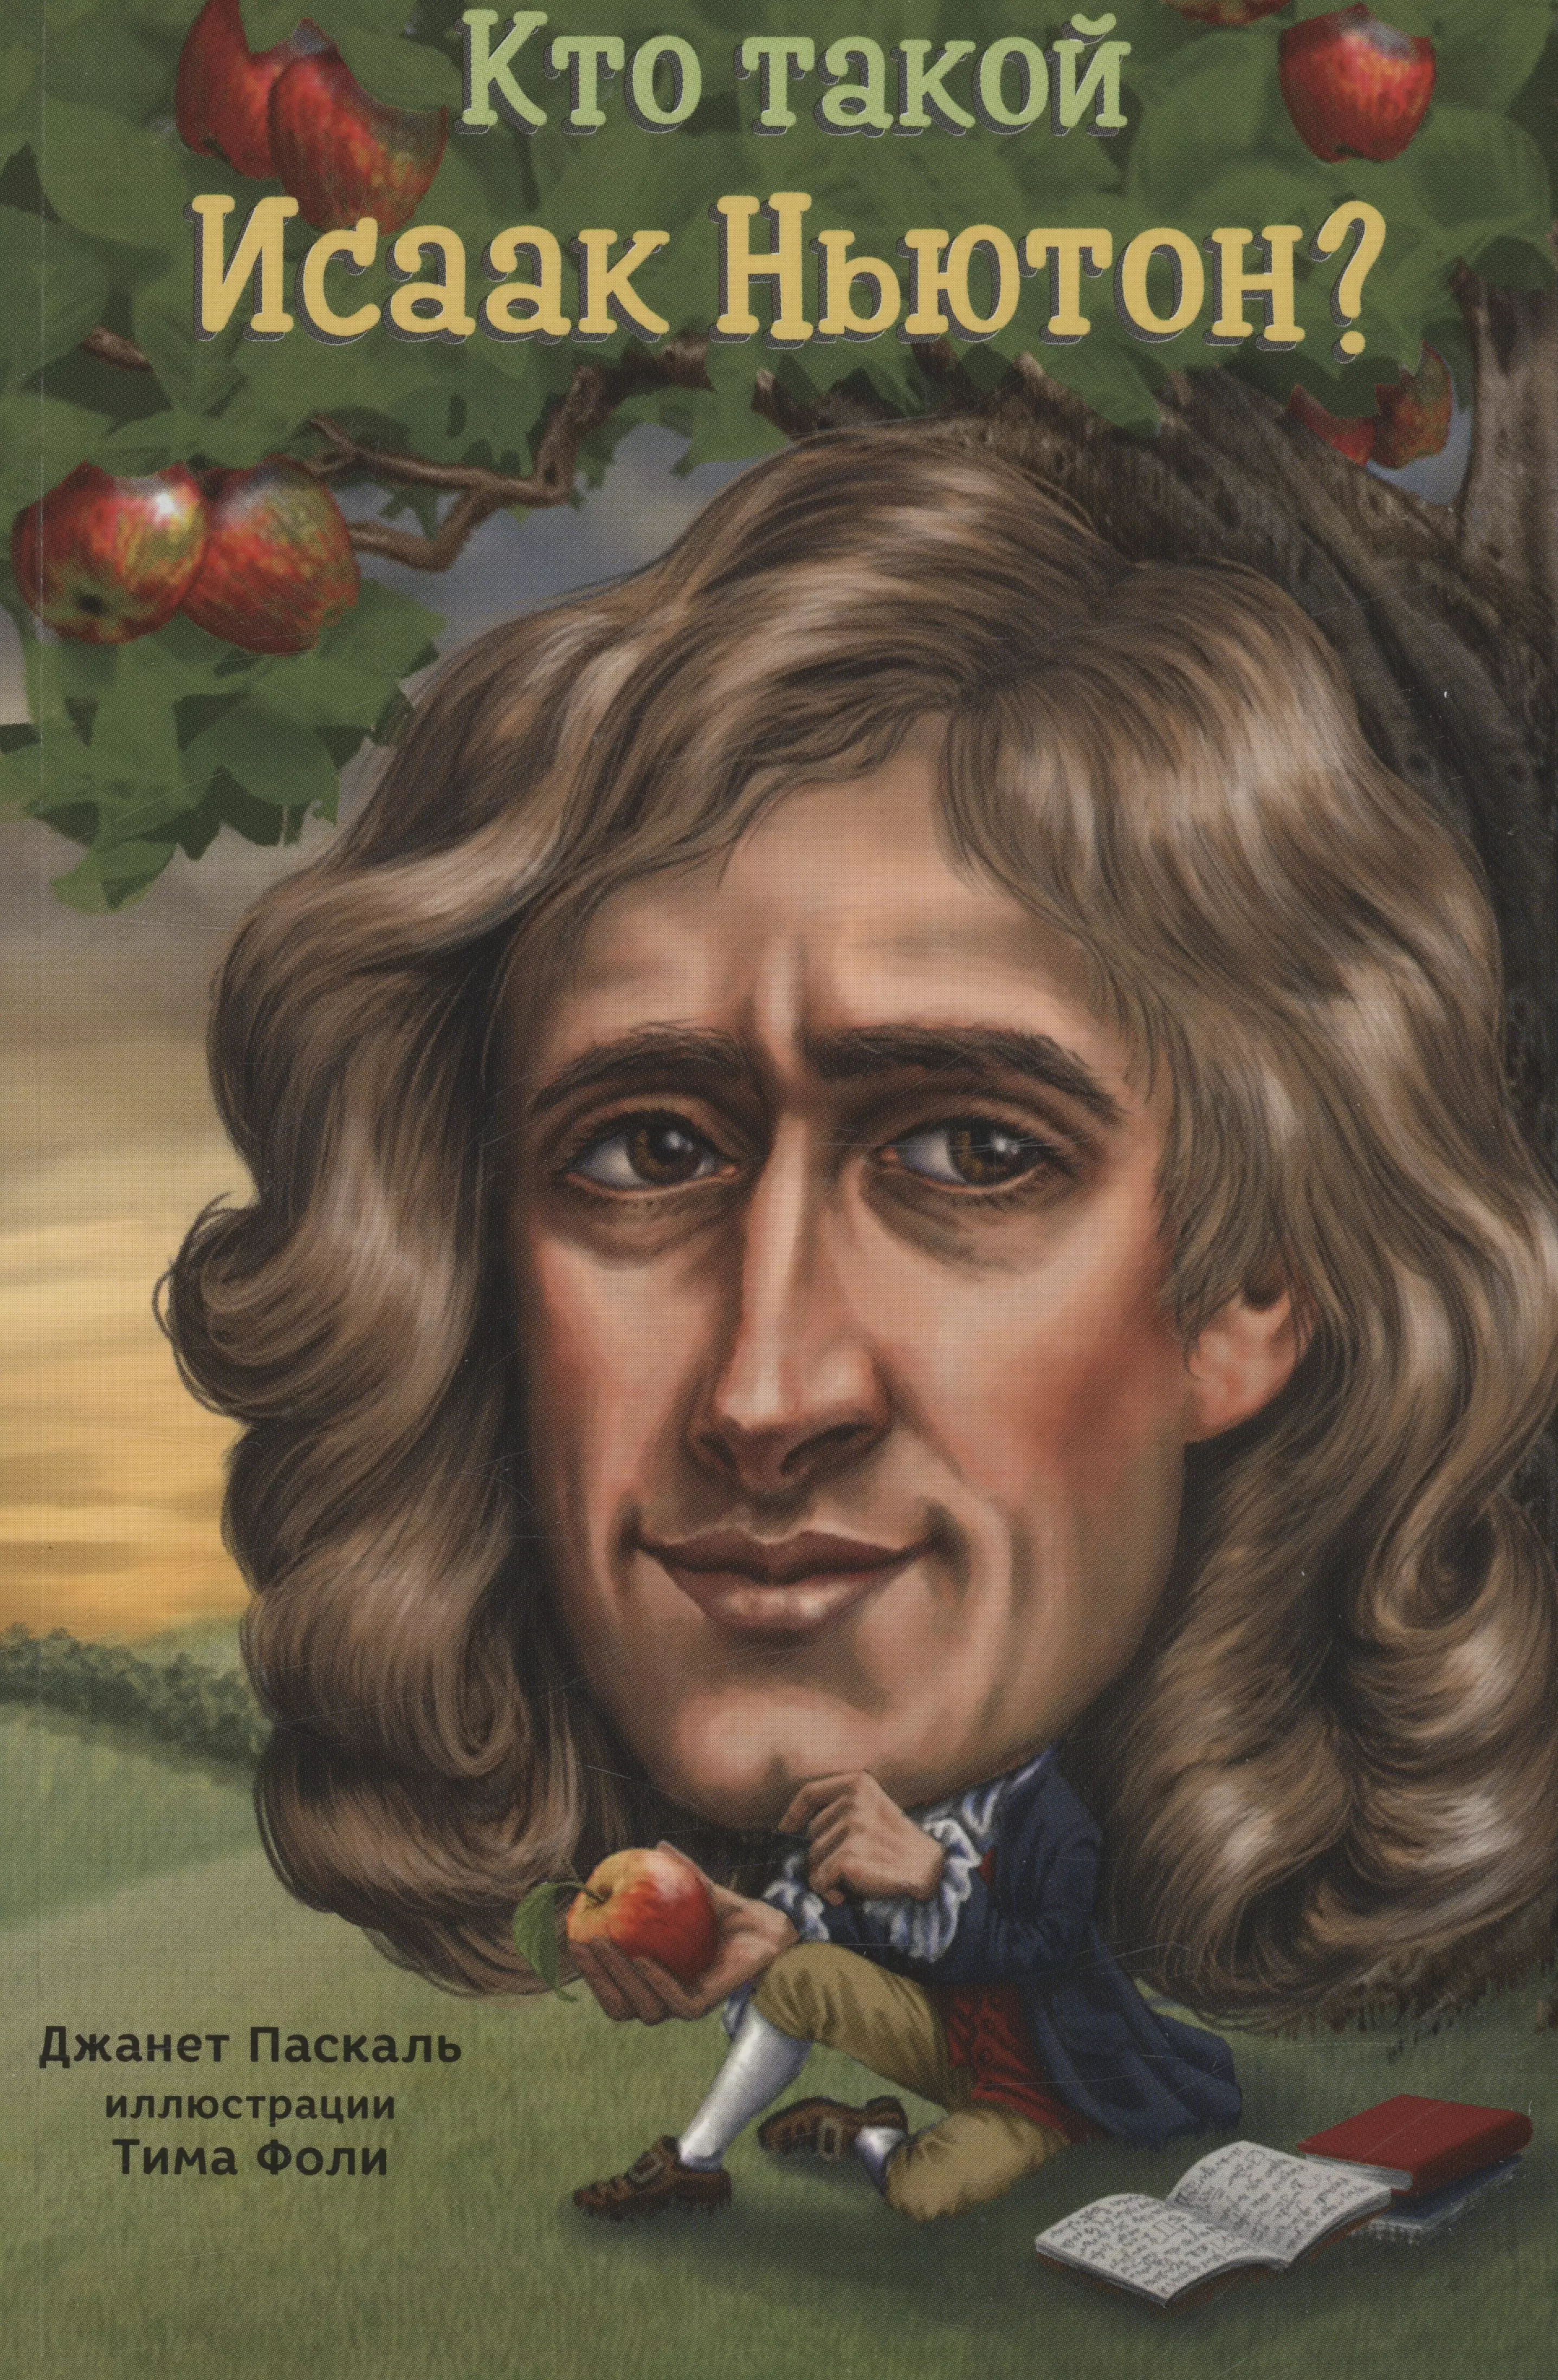 паскаль джанет б кто такой исаак ньютон Паскаль Джанет Б. Кто такой Исаак Ньютон